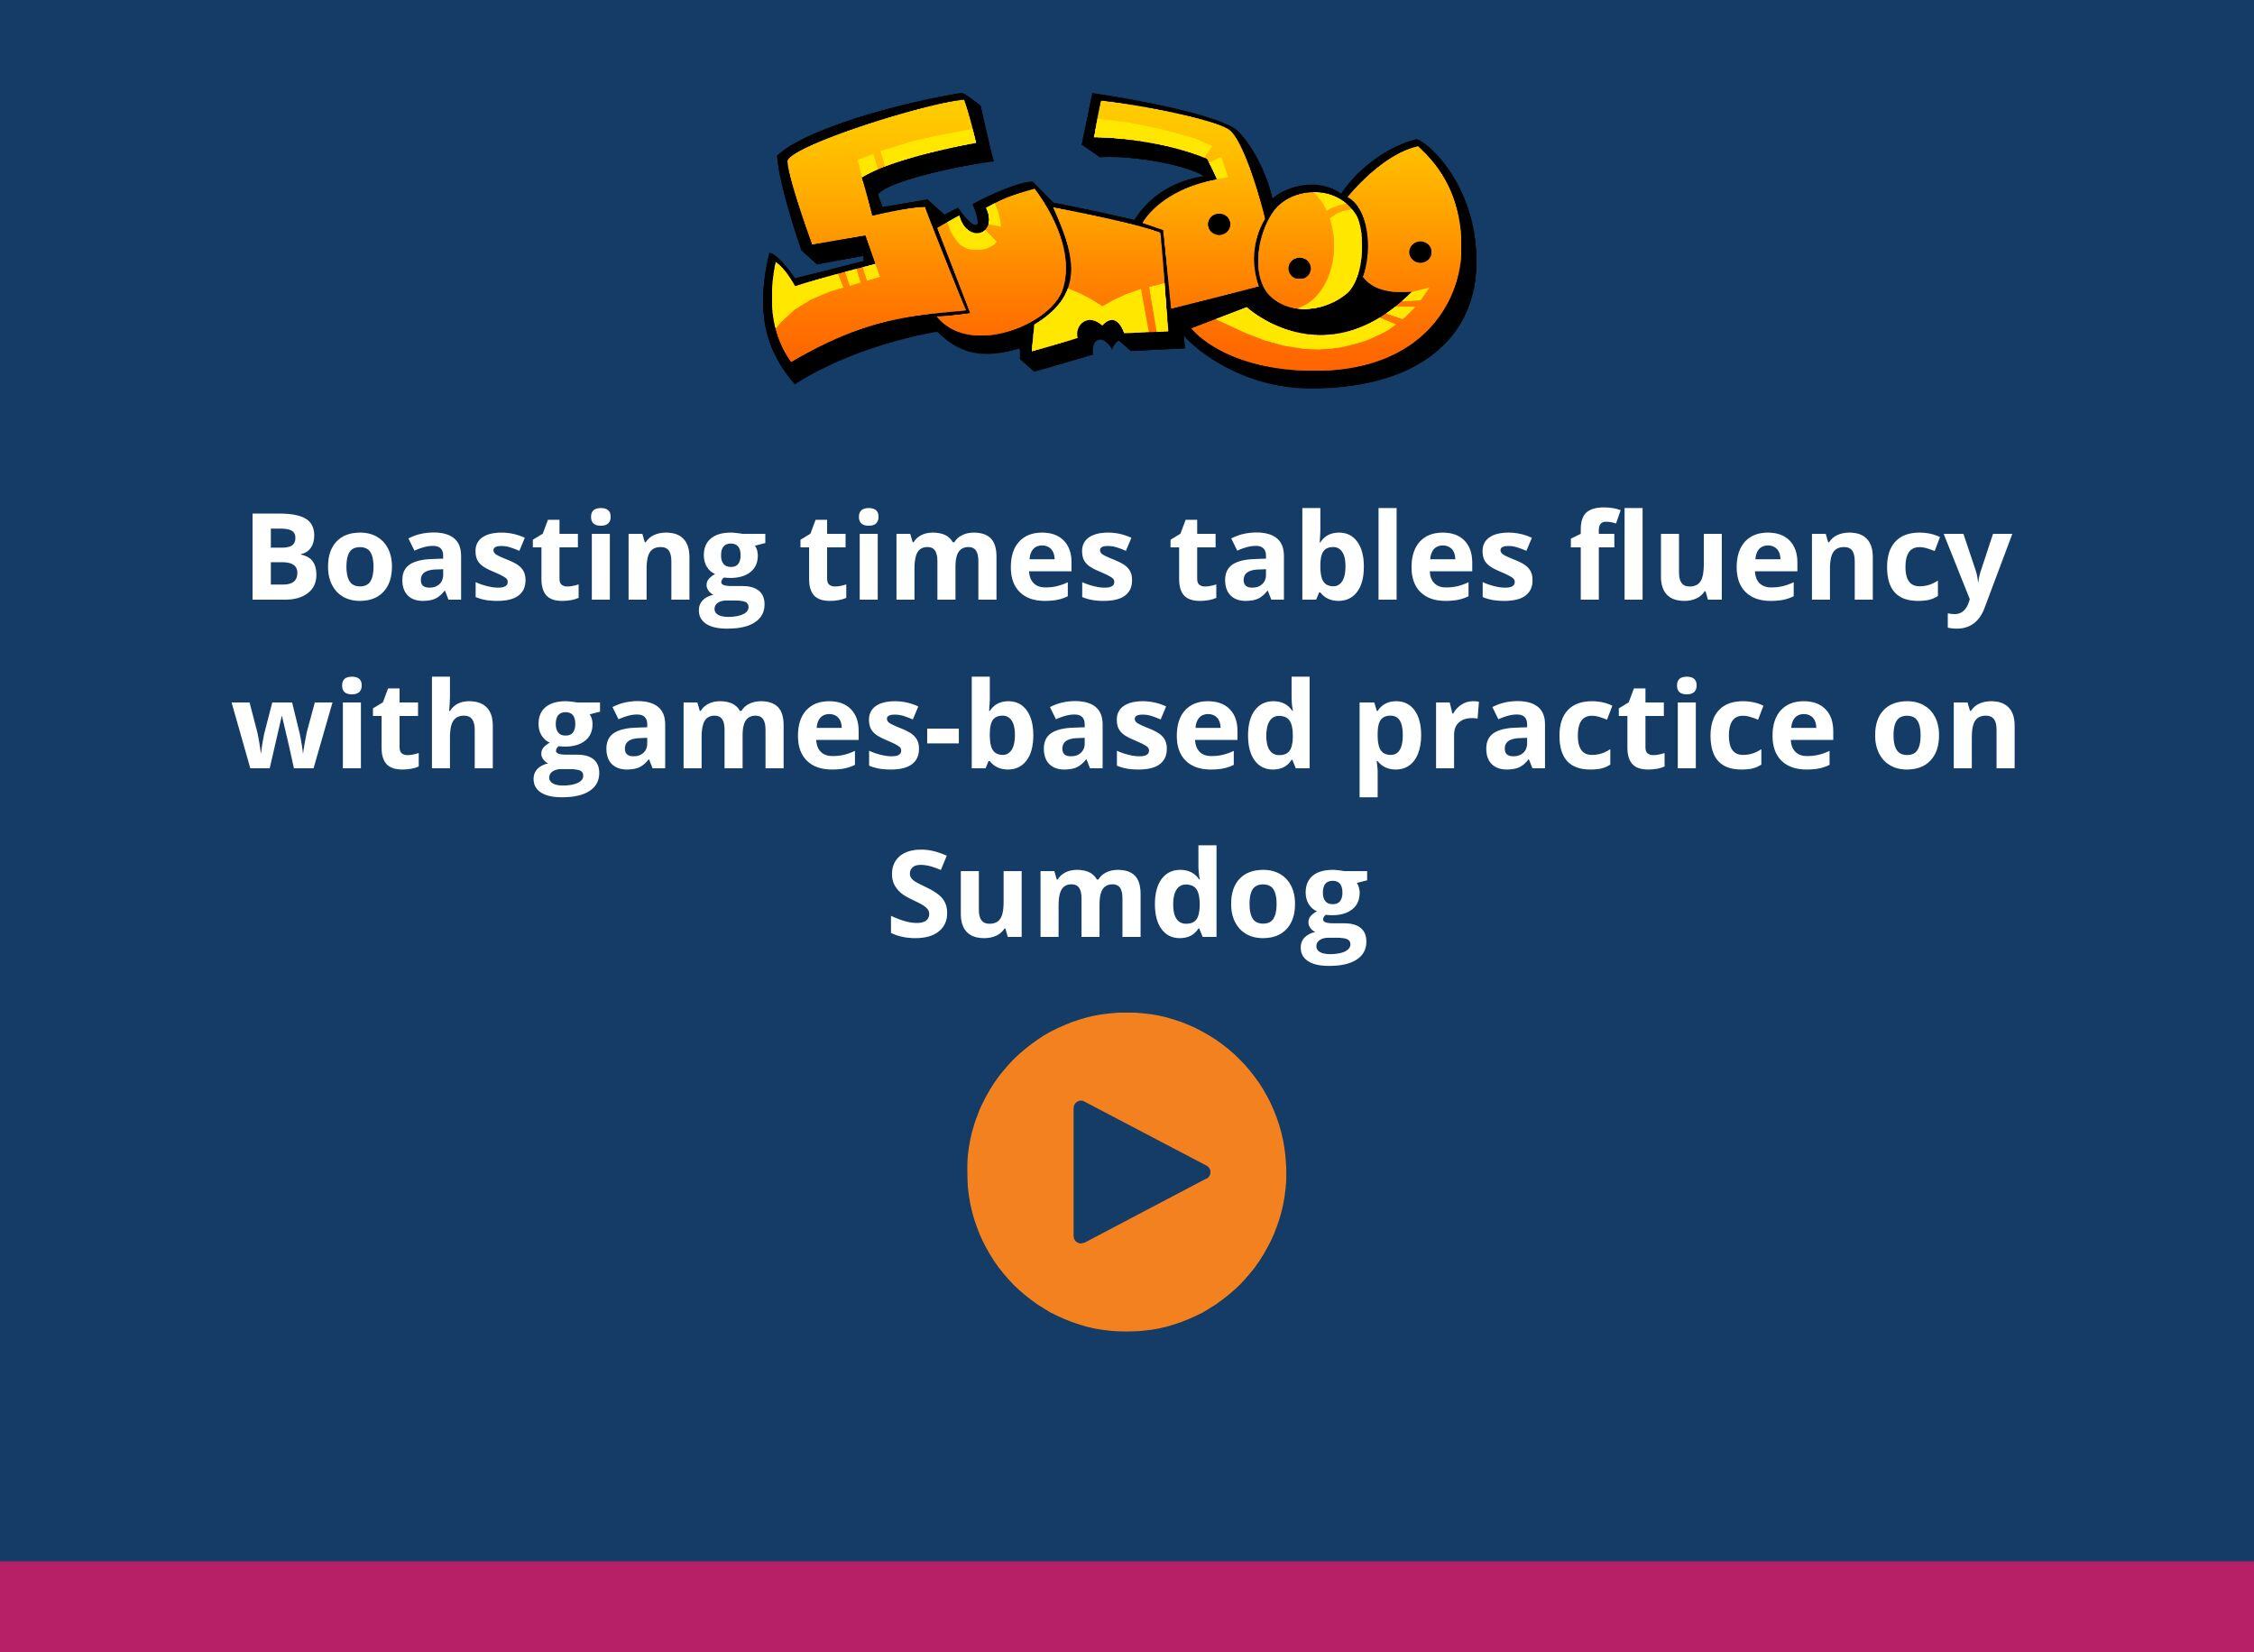 Boasting times tables fluency on Sumdog webinar